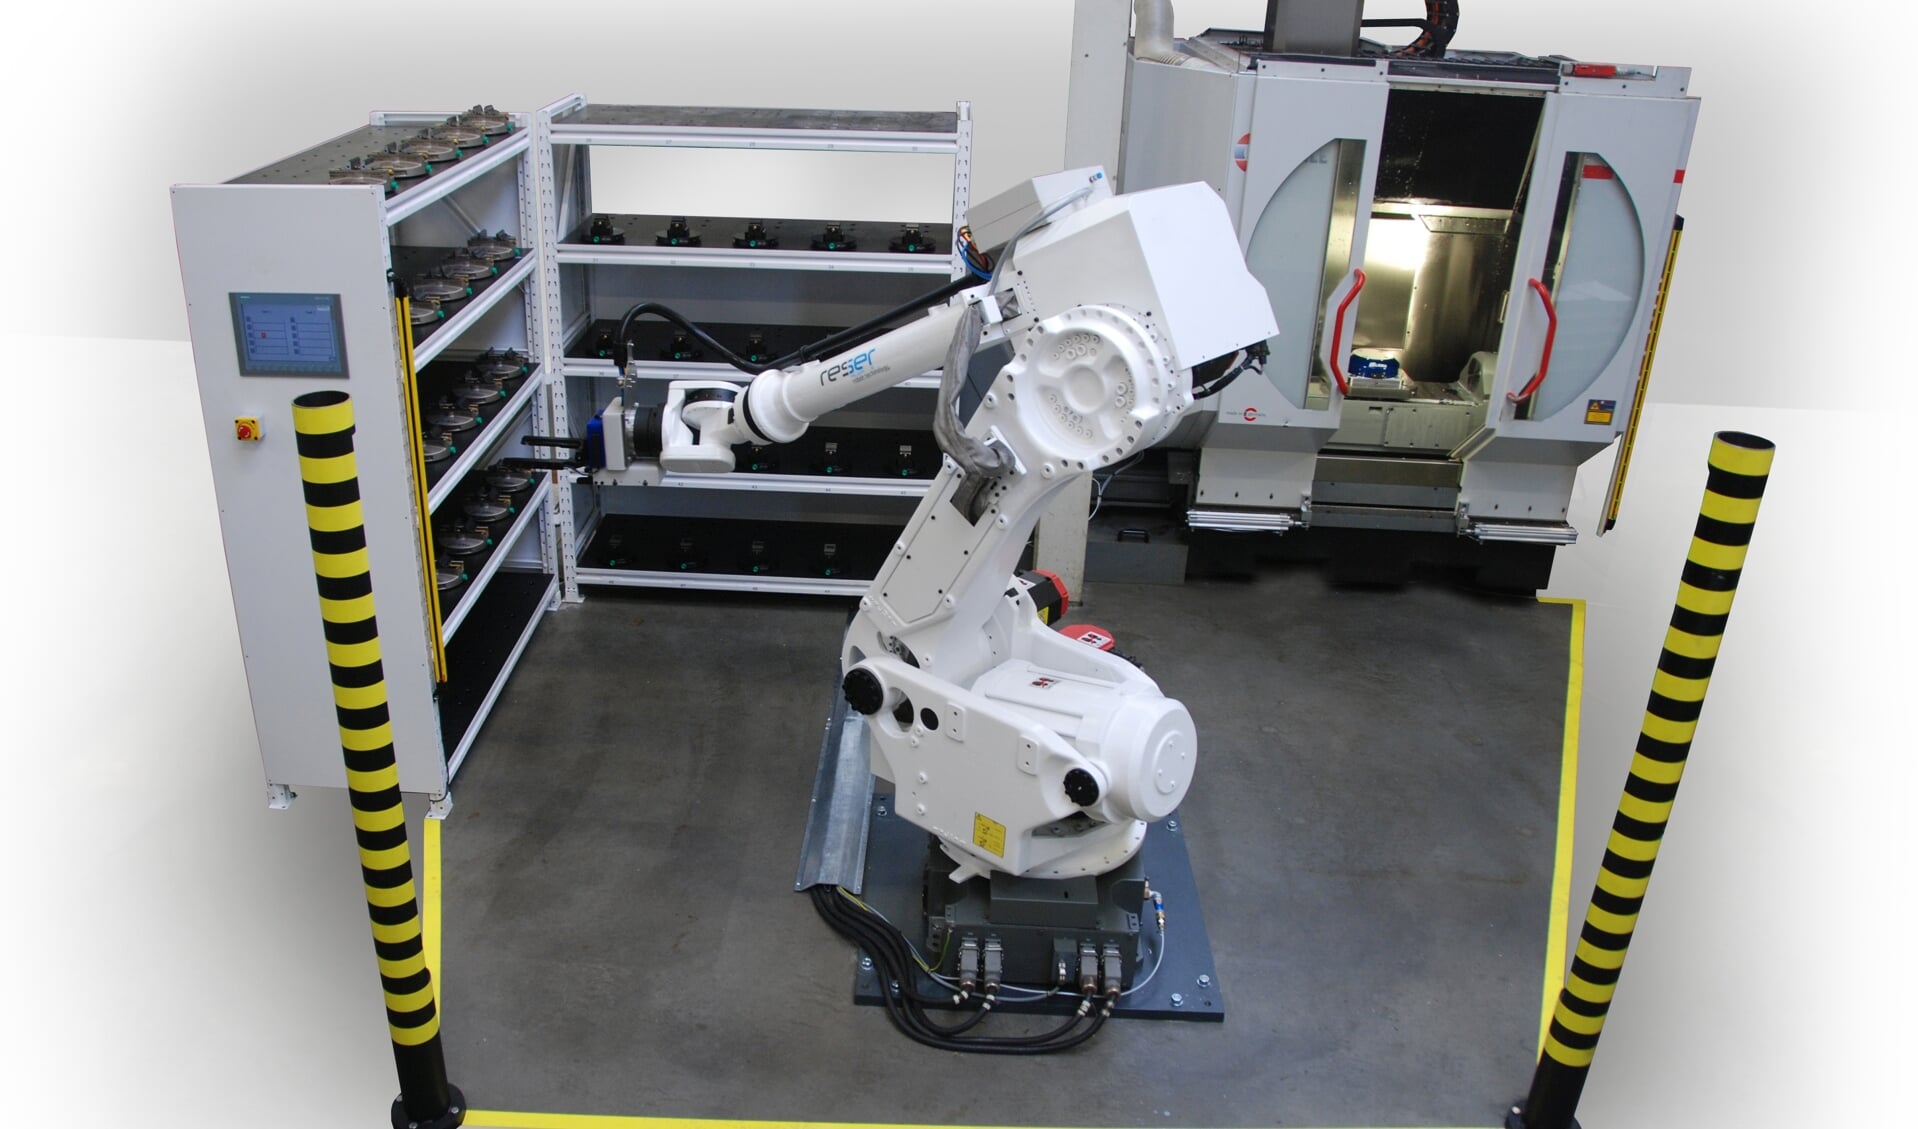 De robot kent een grote payload: hij kan tot 100 kg tillen (verschillende producten)